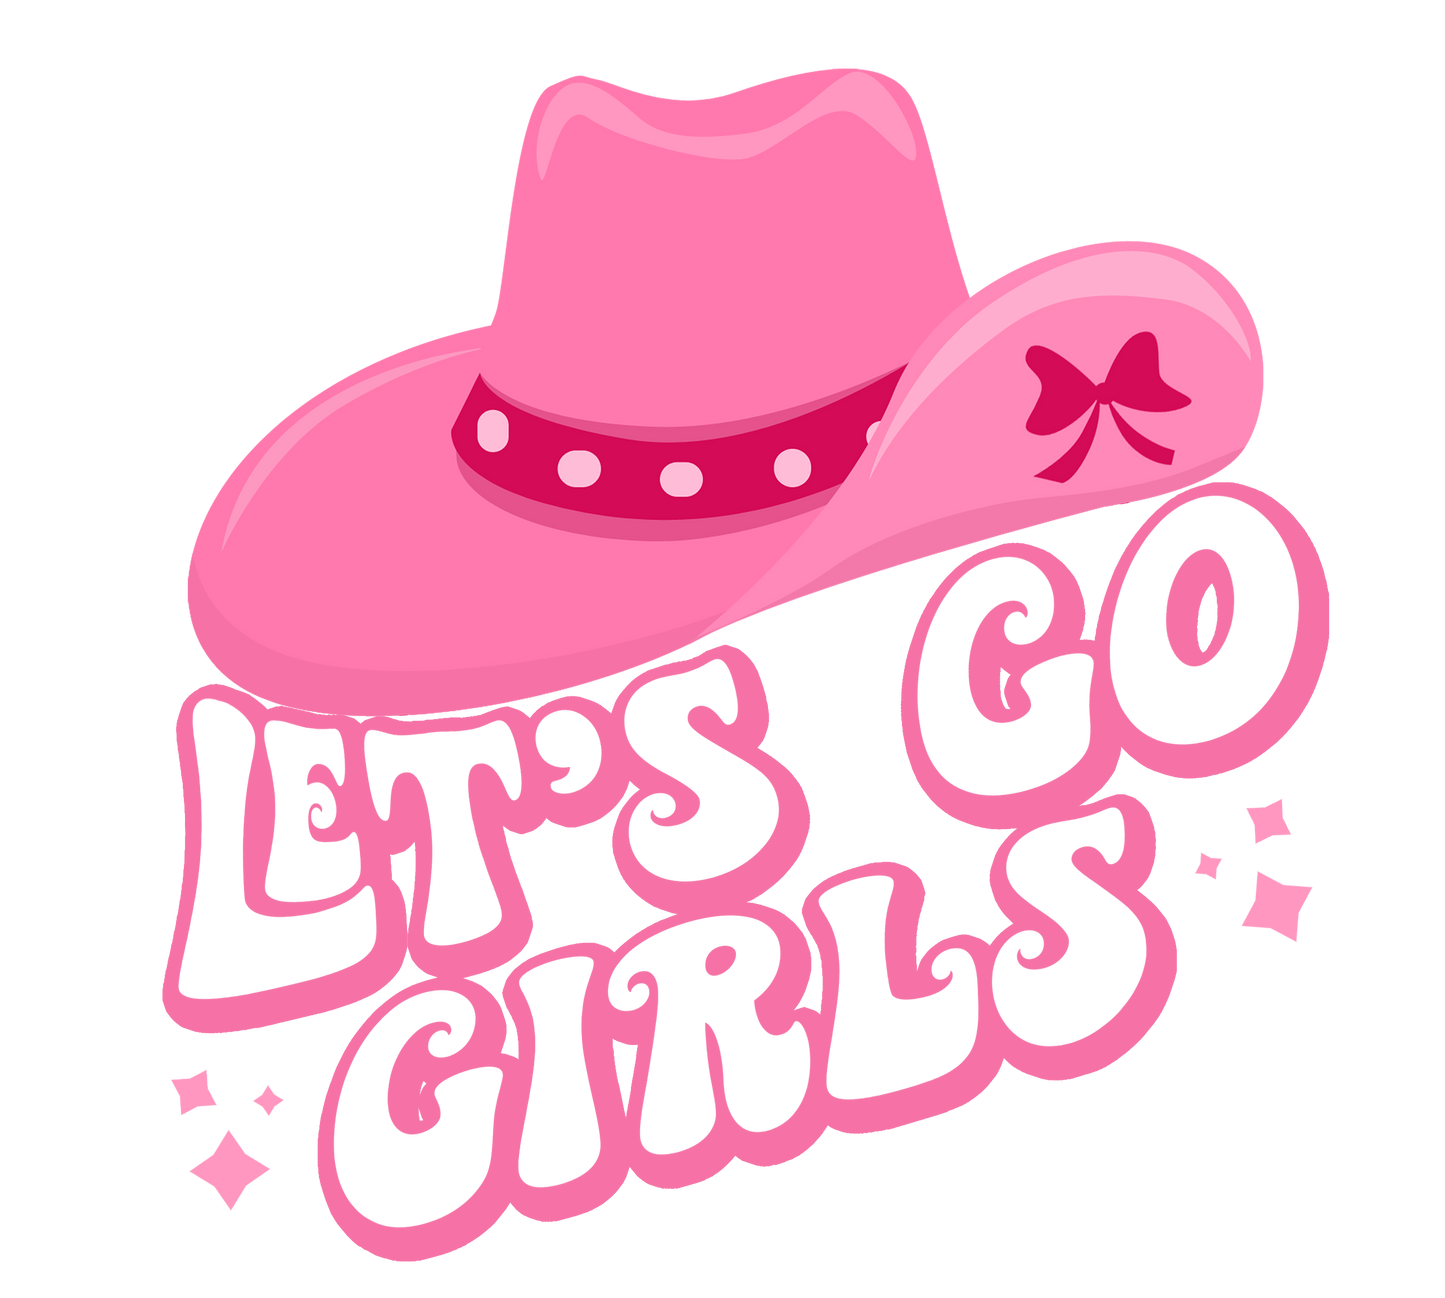 Let’s Go Girls